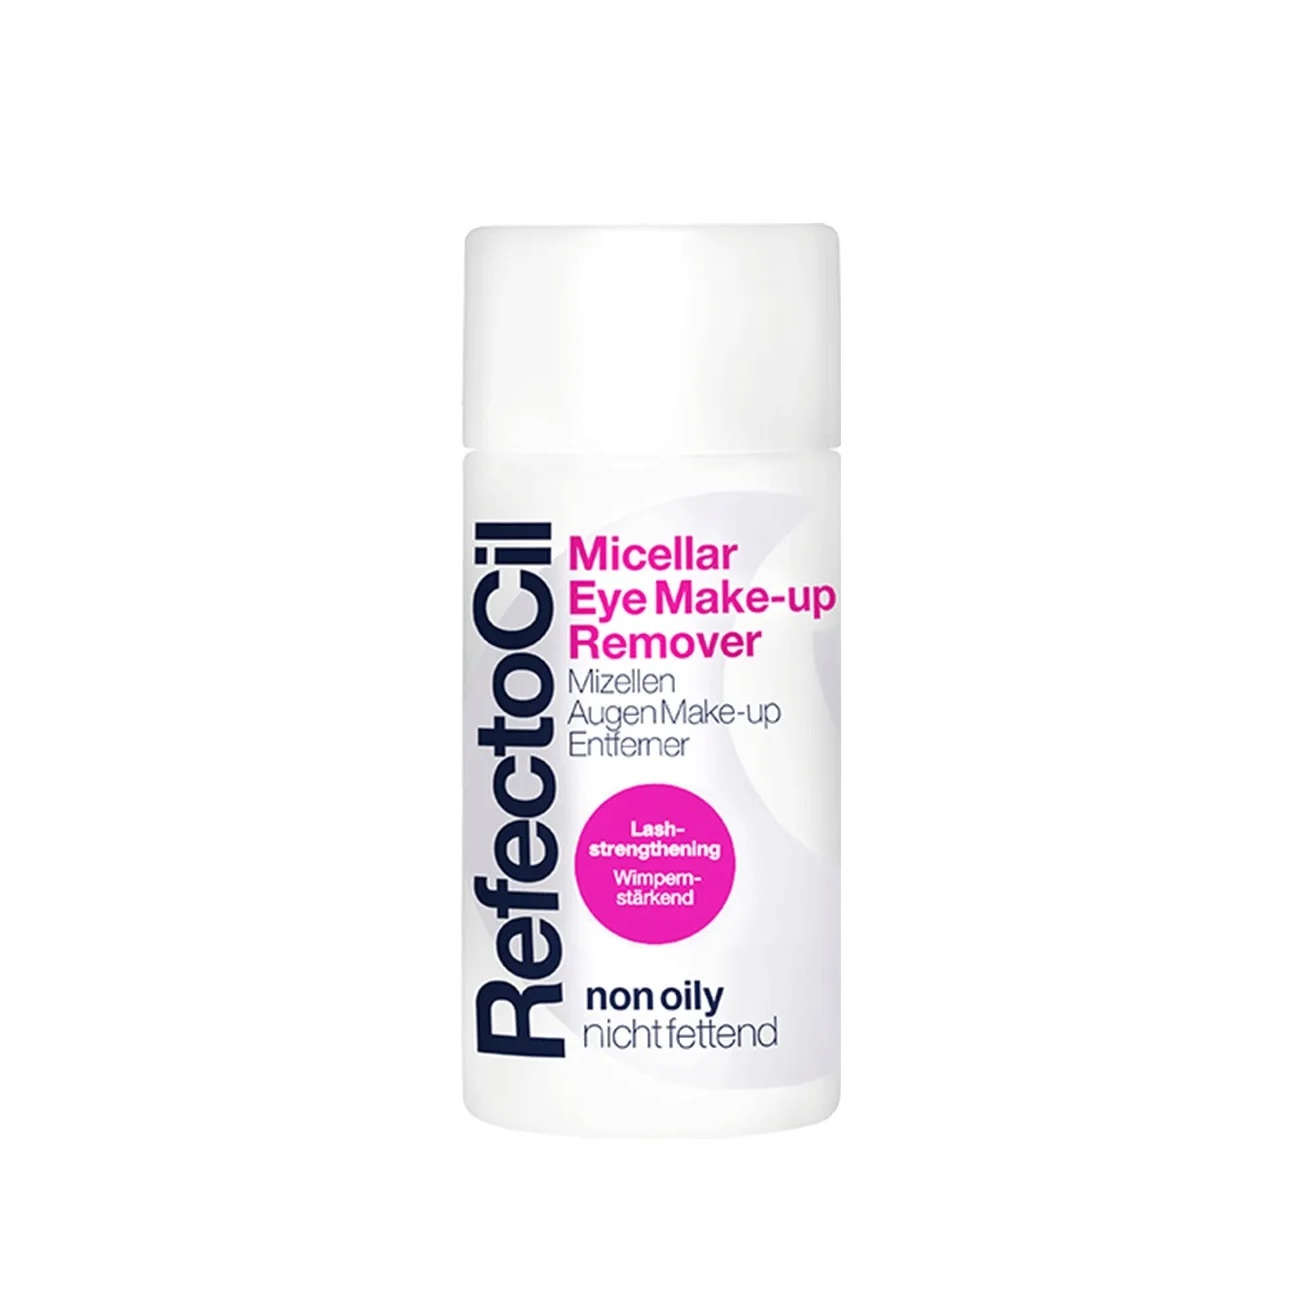 REFECTOCIL, Средство для снятия макияжа с глаз Make-Up Remover, 150 мл.